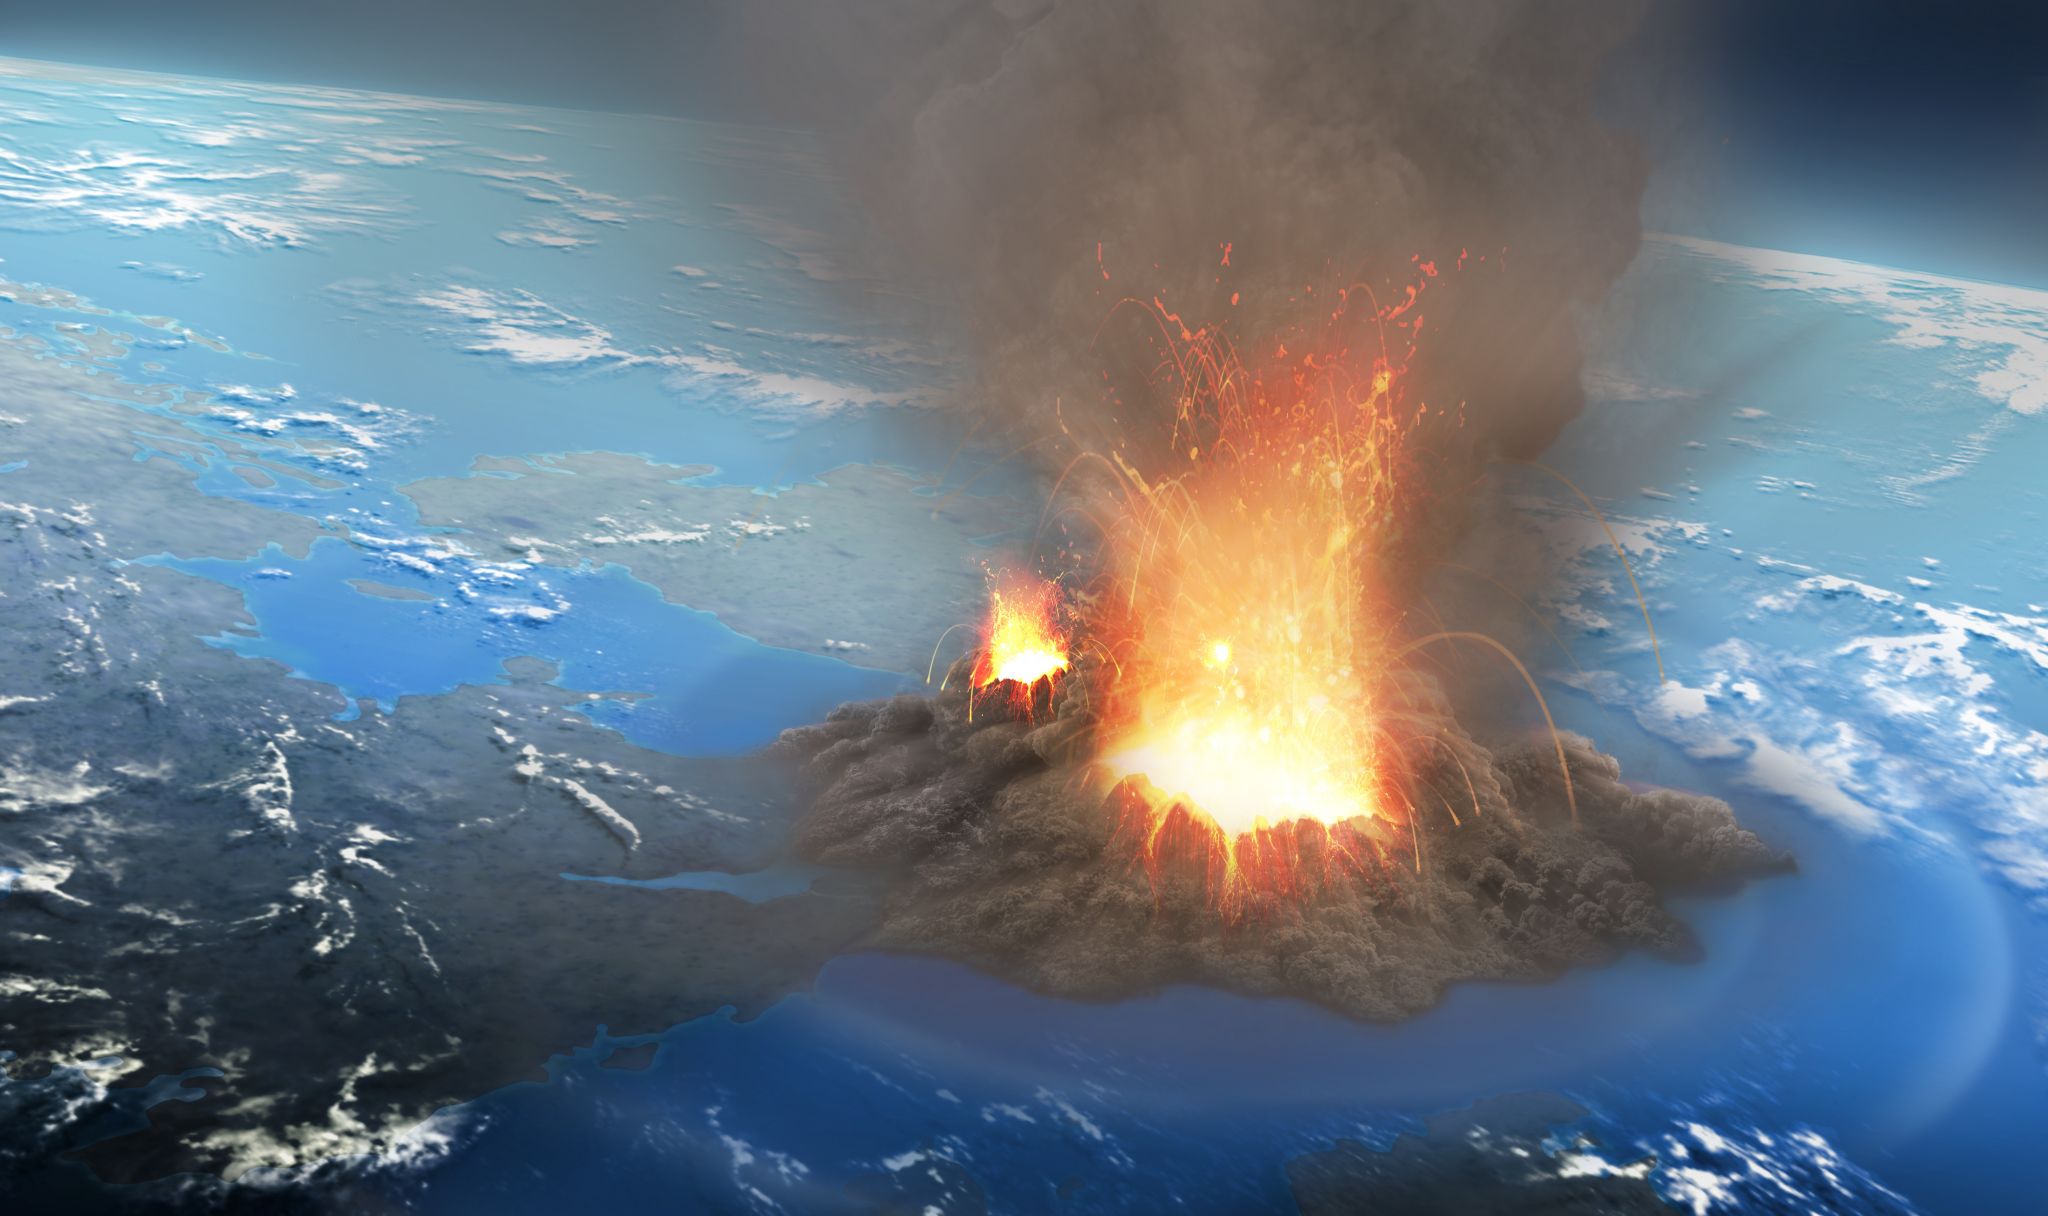 Наука: катастрофическое извержение супервулкана гораздо более вероятно, чем считалось ранее